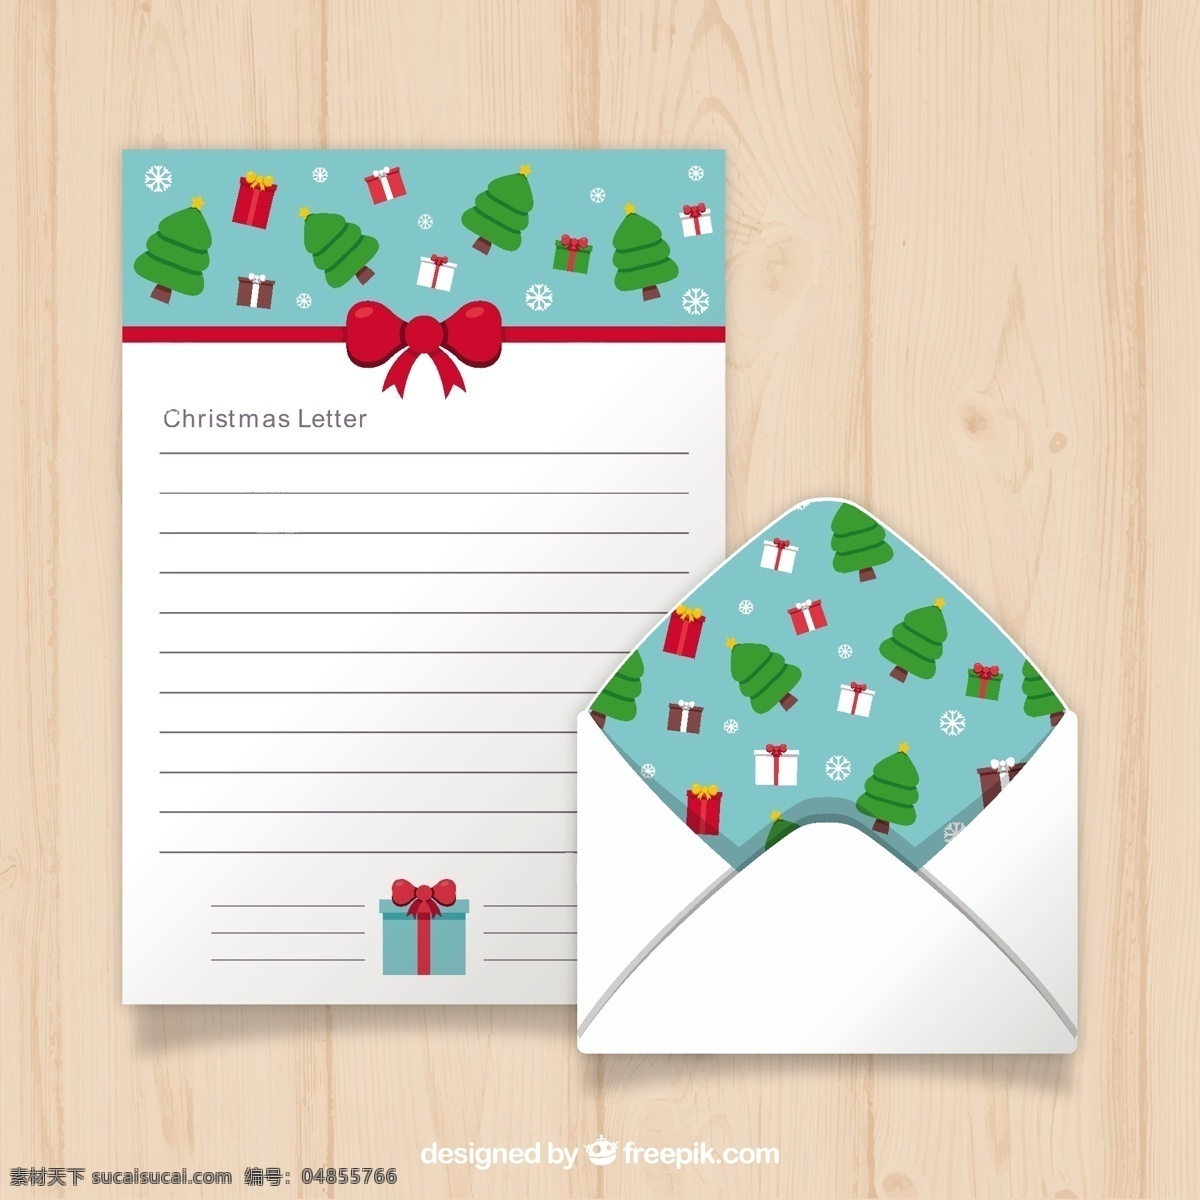 美妙 圣诞 信件 礼物 树木 圣诞节 圣诞快乐 圣诞树 圣诞卡 邀请卡 模板 纸张 快乐 庆典 节日 文字 礼品卡 信 节 信封